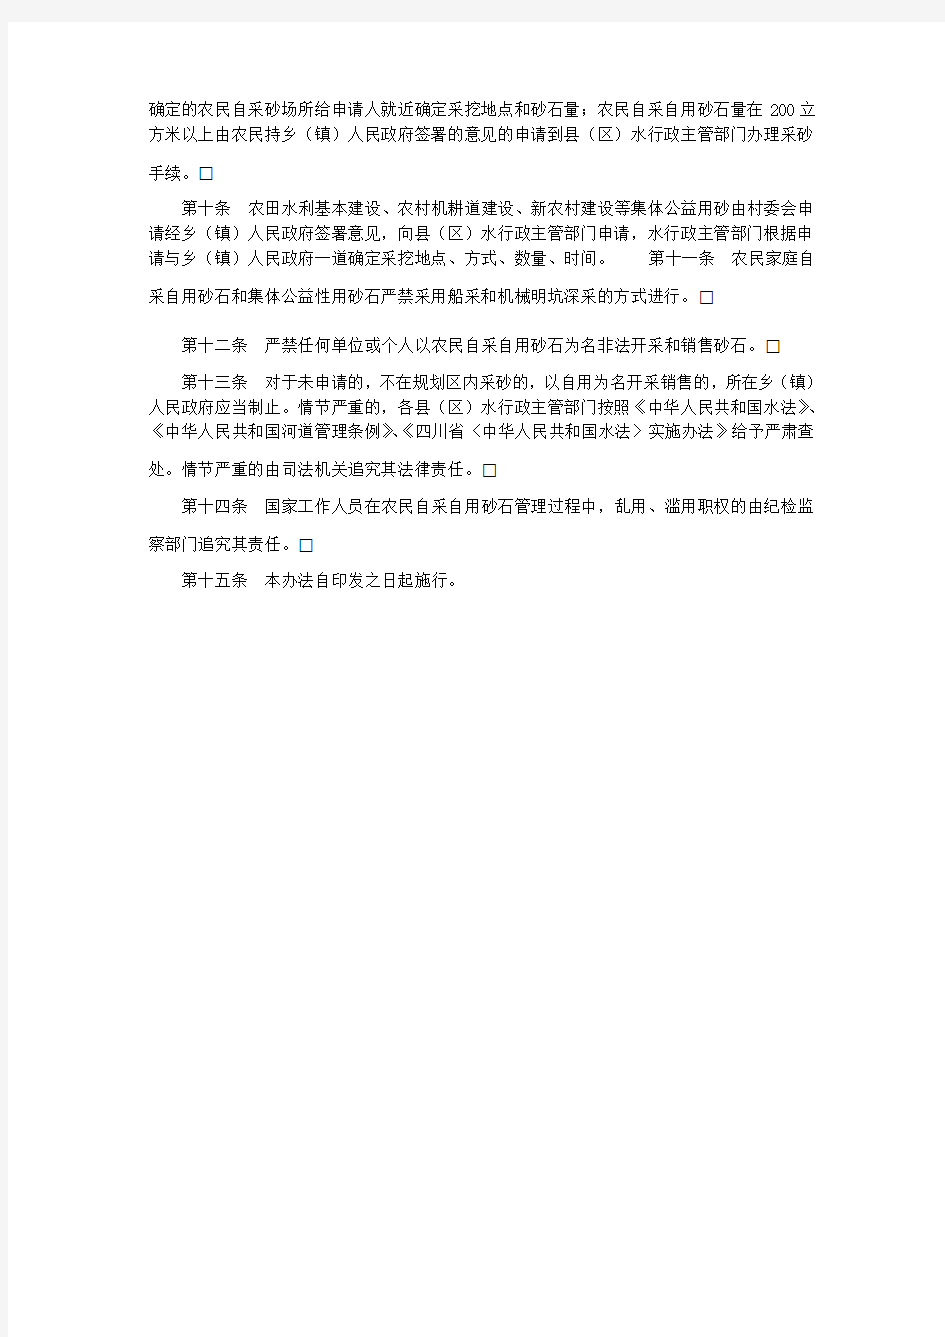 广元市人民政府办公室关于印发广元市农民自采自用砂石管理暂行办法